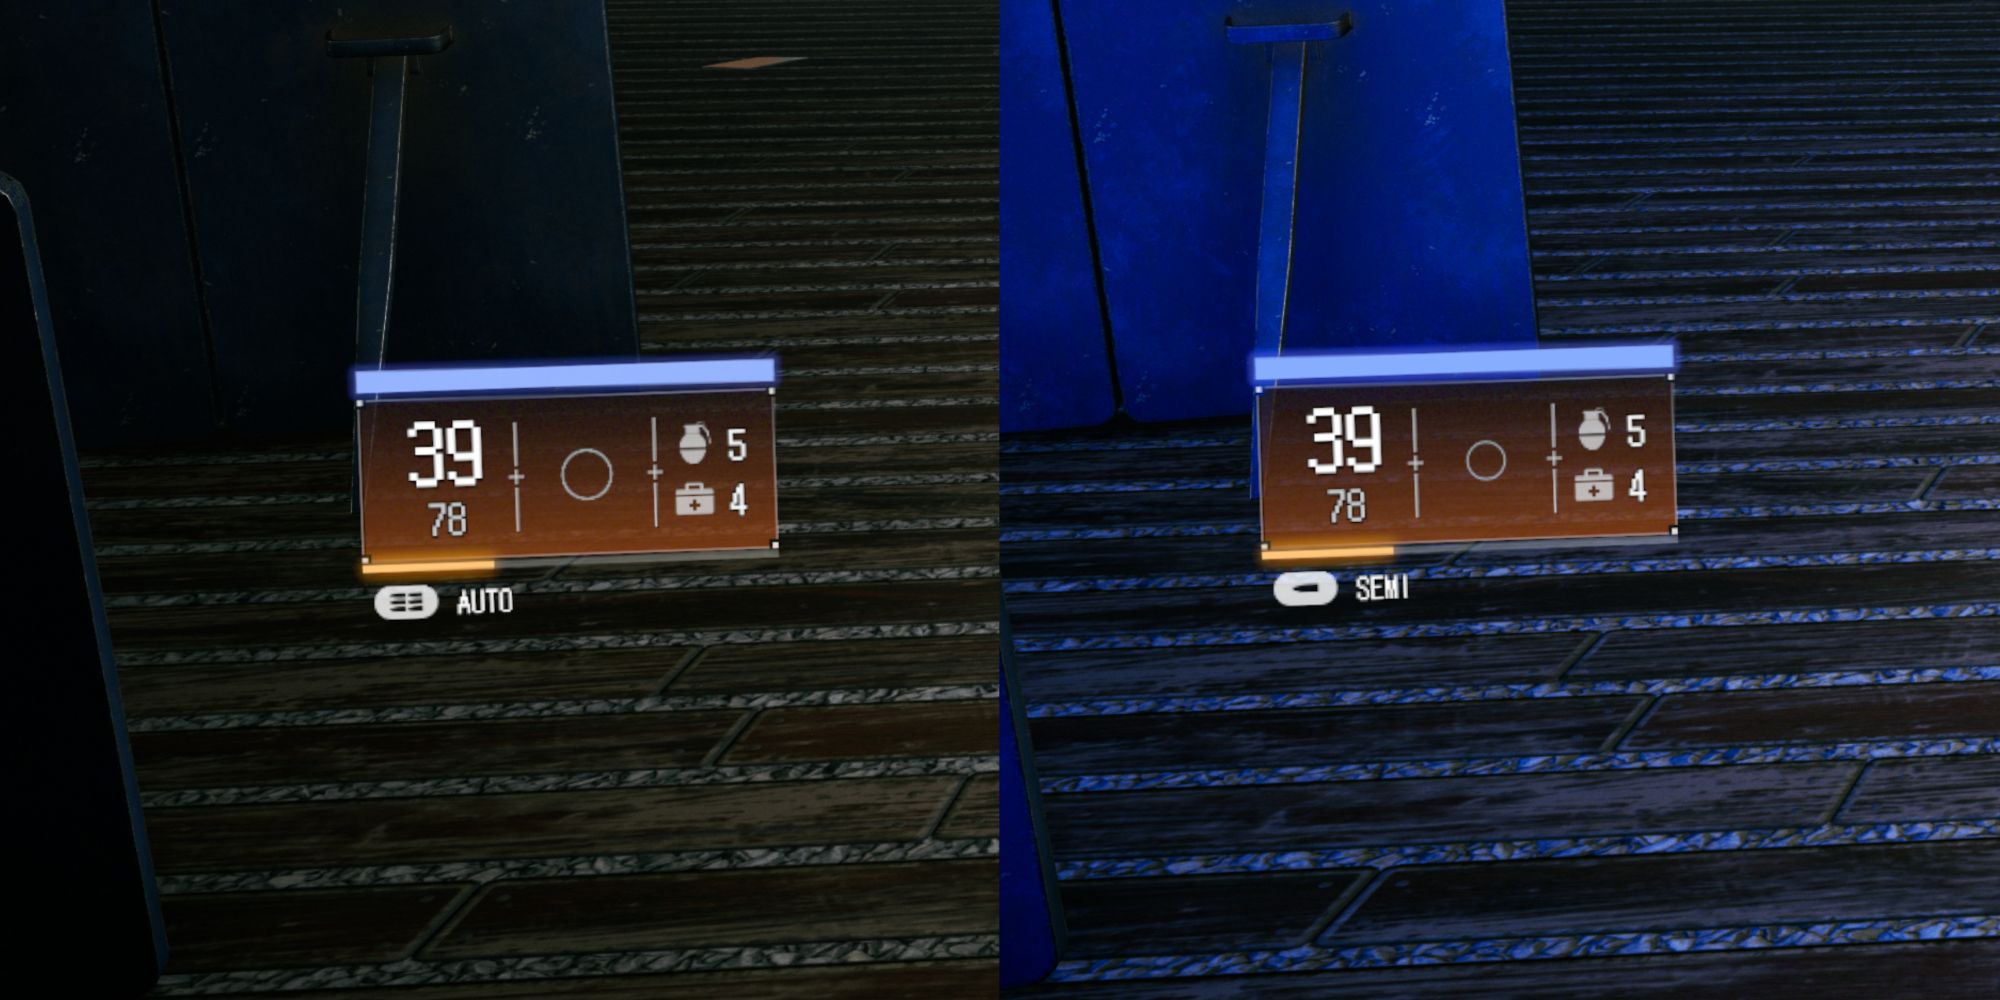 Разделенное изображение, демонстрирующее две скорострельности в игре Wanted: Dead. На левом изображении Винтовка Стоуна переключена в автоматический режим (полностью автоматический), а на правом изображении Винтовка Стоуна переключена в полуавтоматический режим (одиночный выстрел).